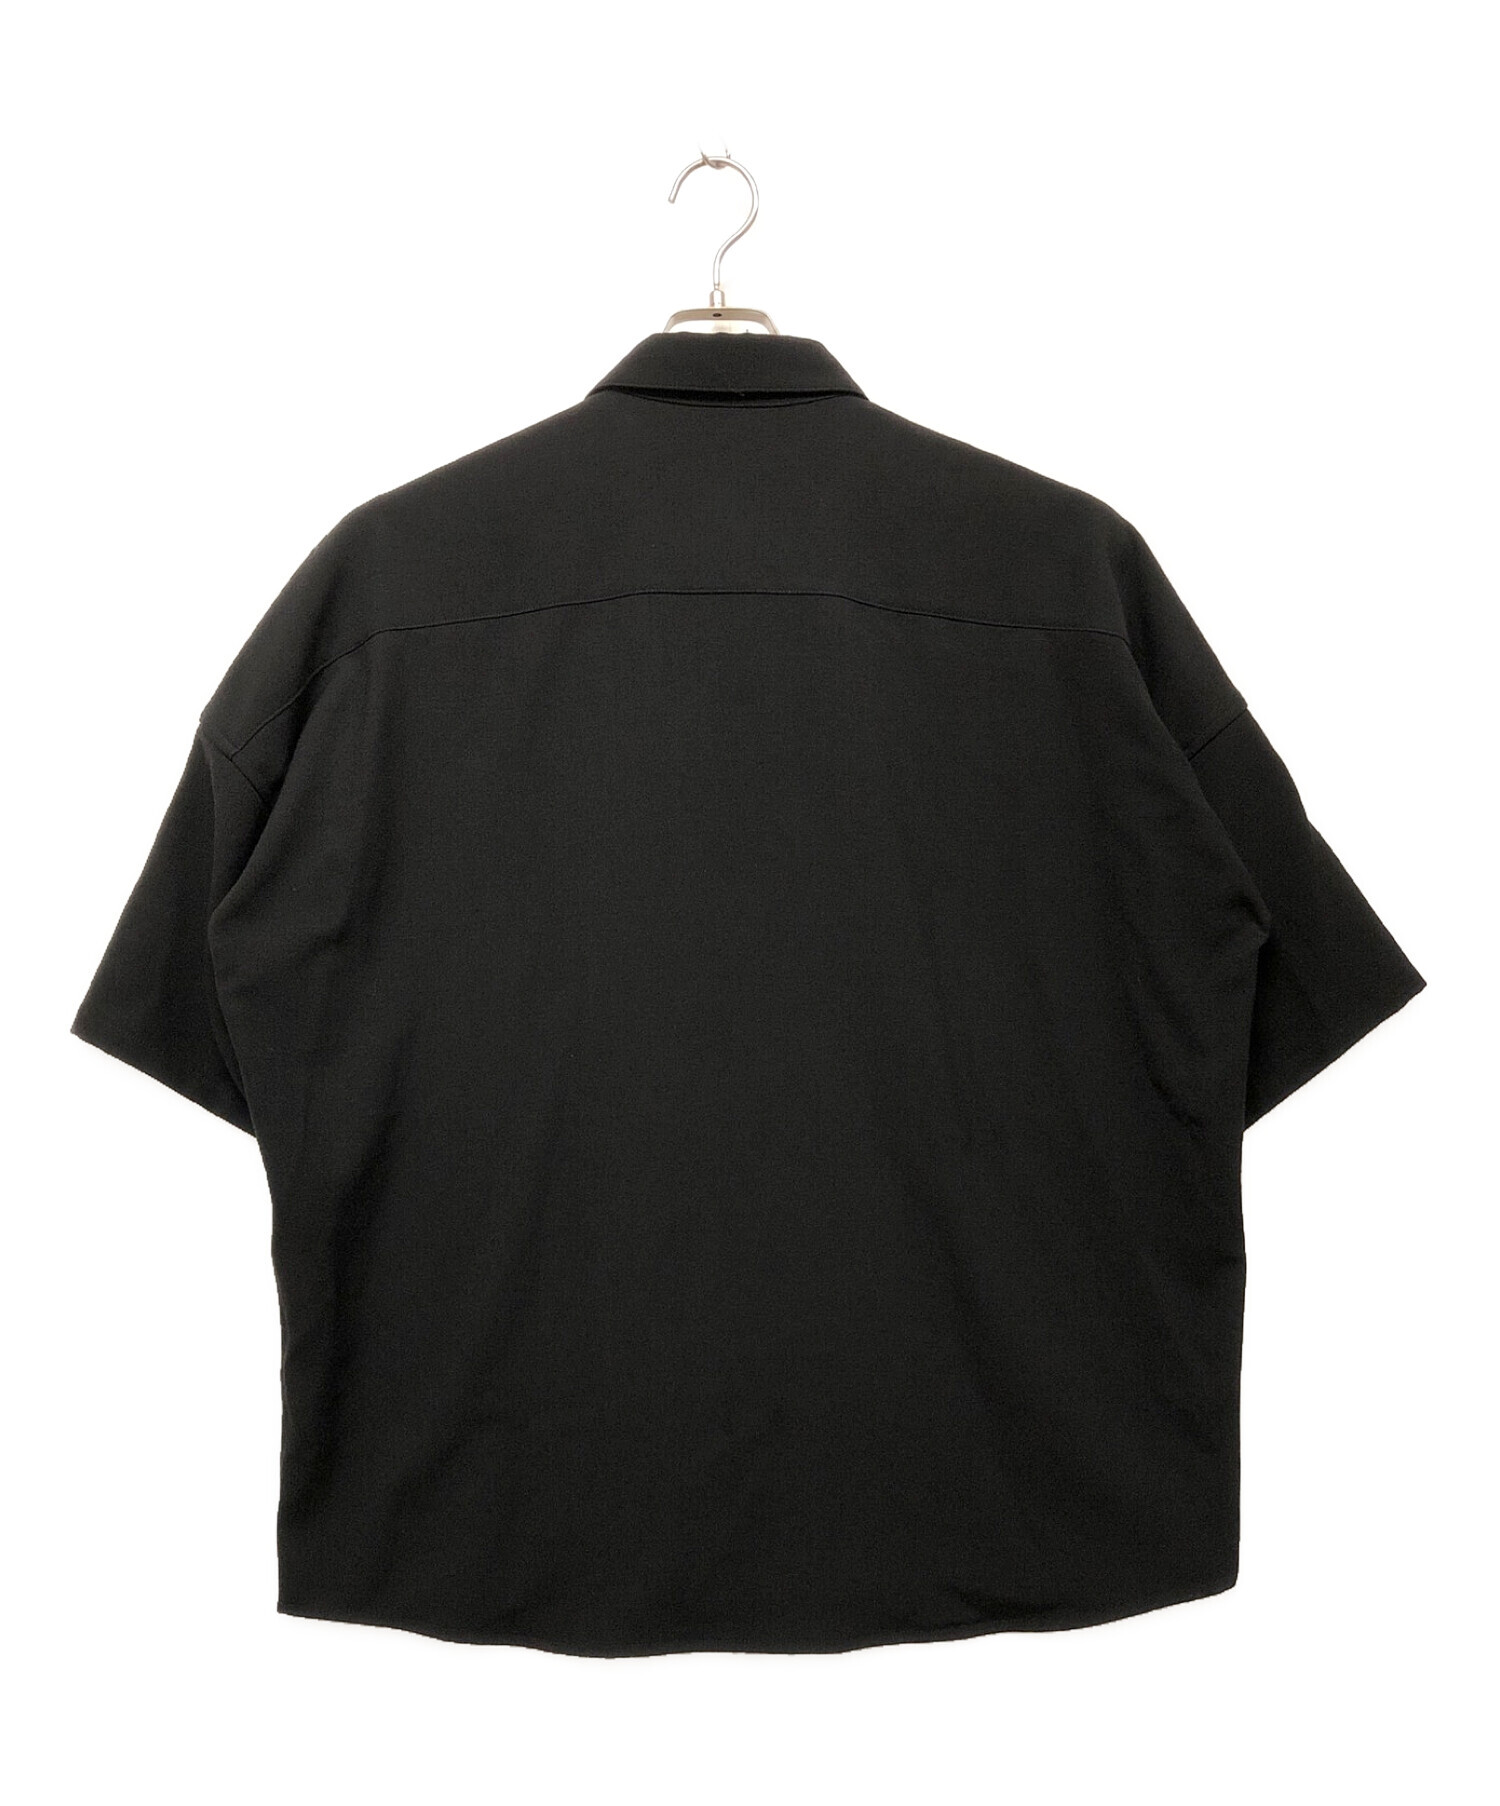 SHAREEF (シャリーフ) シャツ ブラック×ホワイト サイズ:SIZE 1